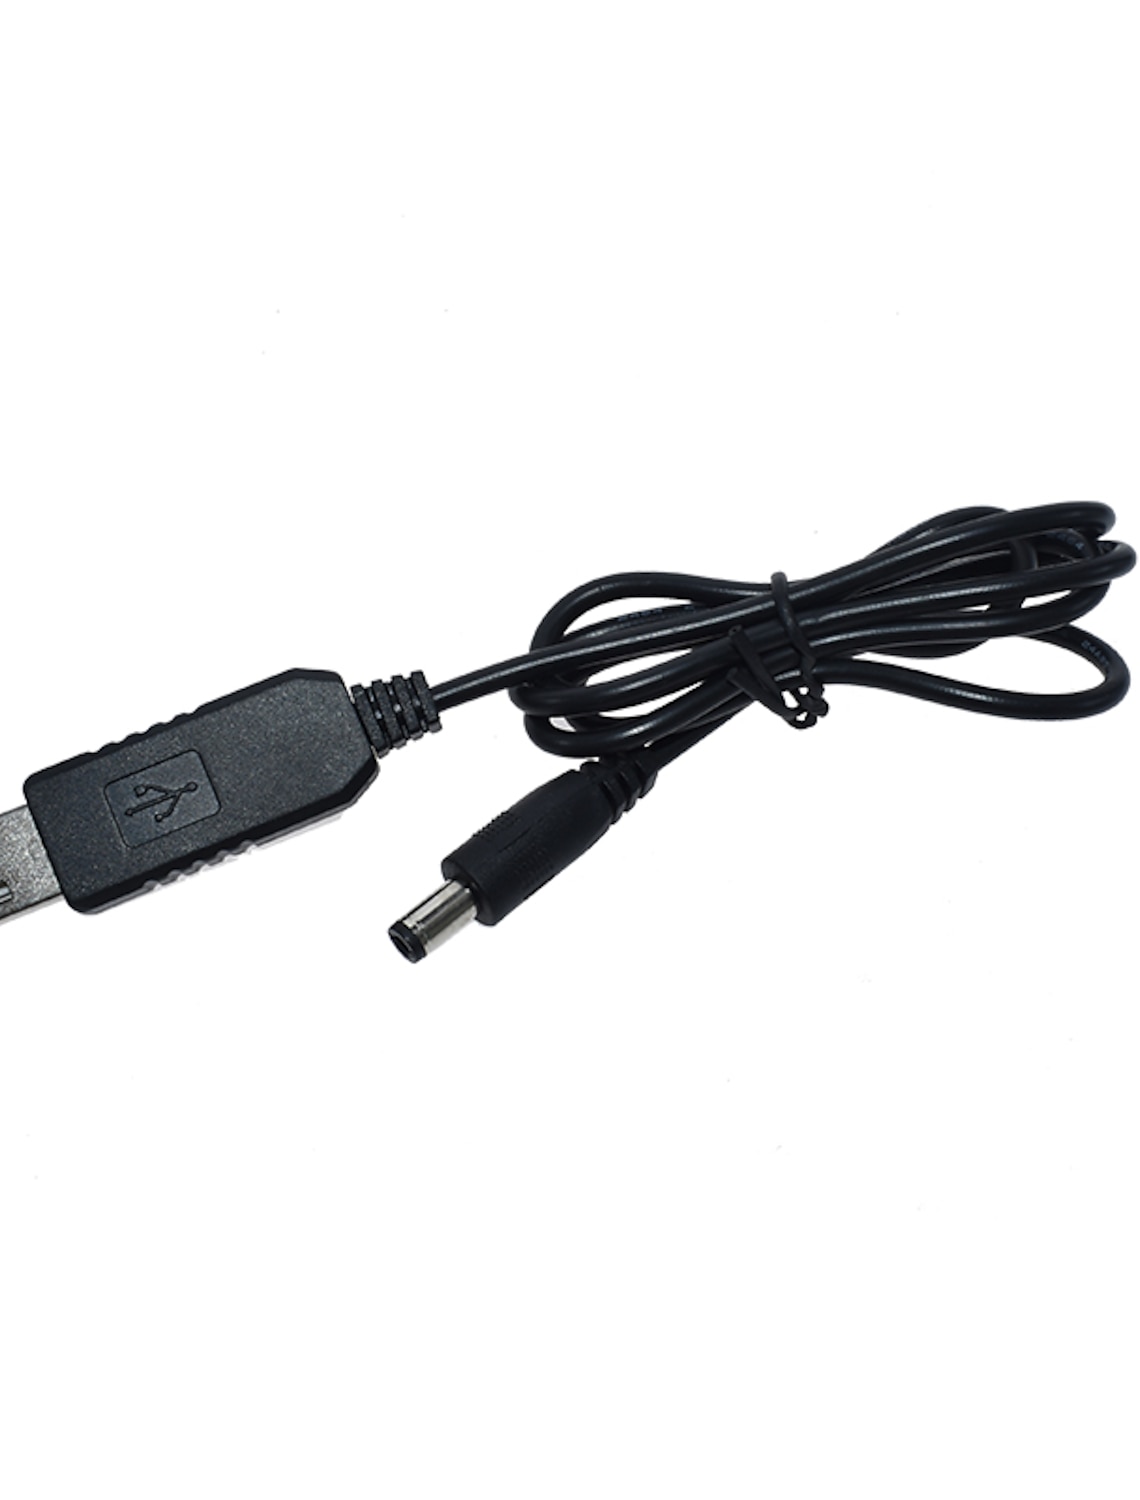 1M/3Ft Cable Black Connector DC 5V to DC 9V 12V Module Converter USB 2.1x5.5mm 